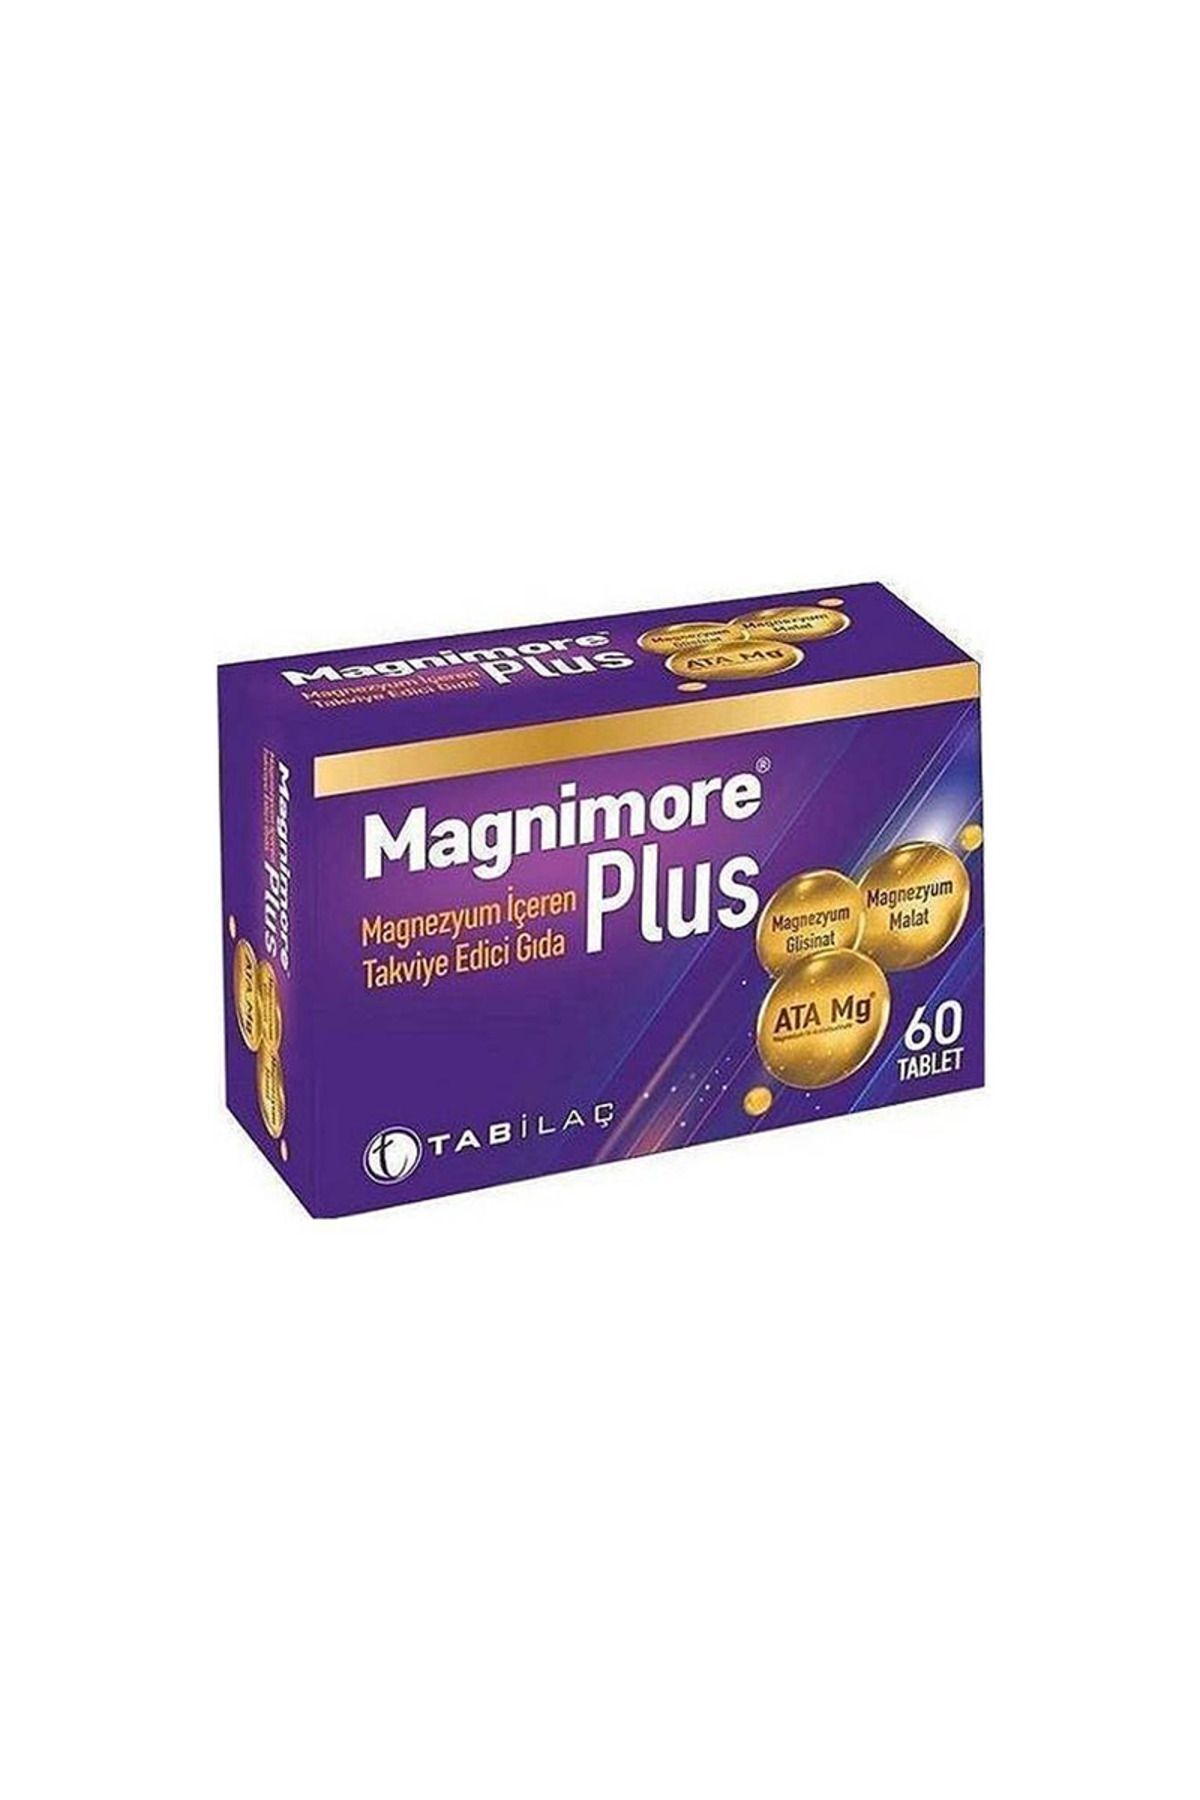 Magnimore Plus 60 Let